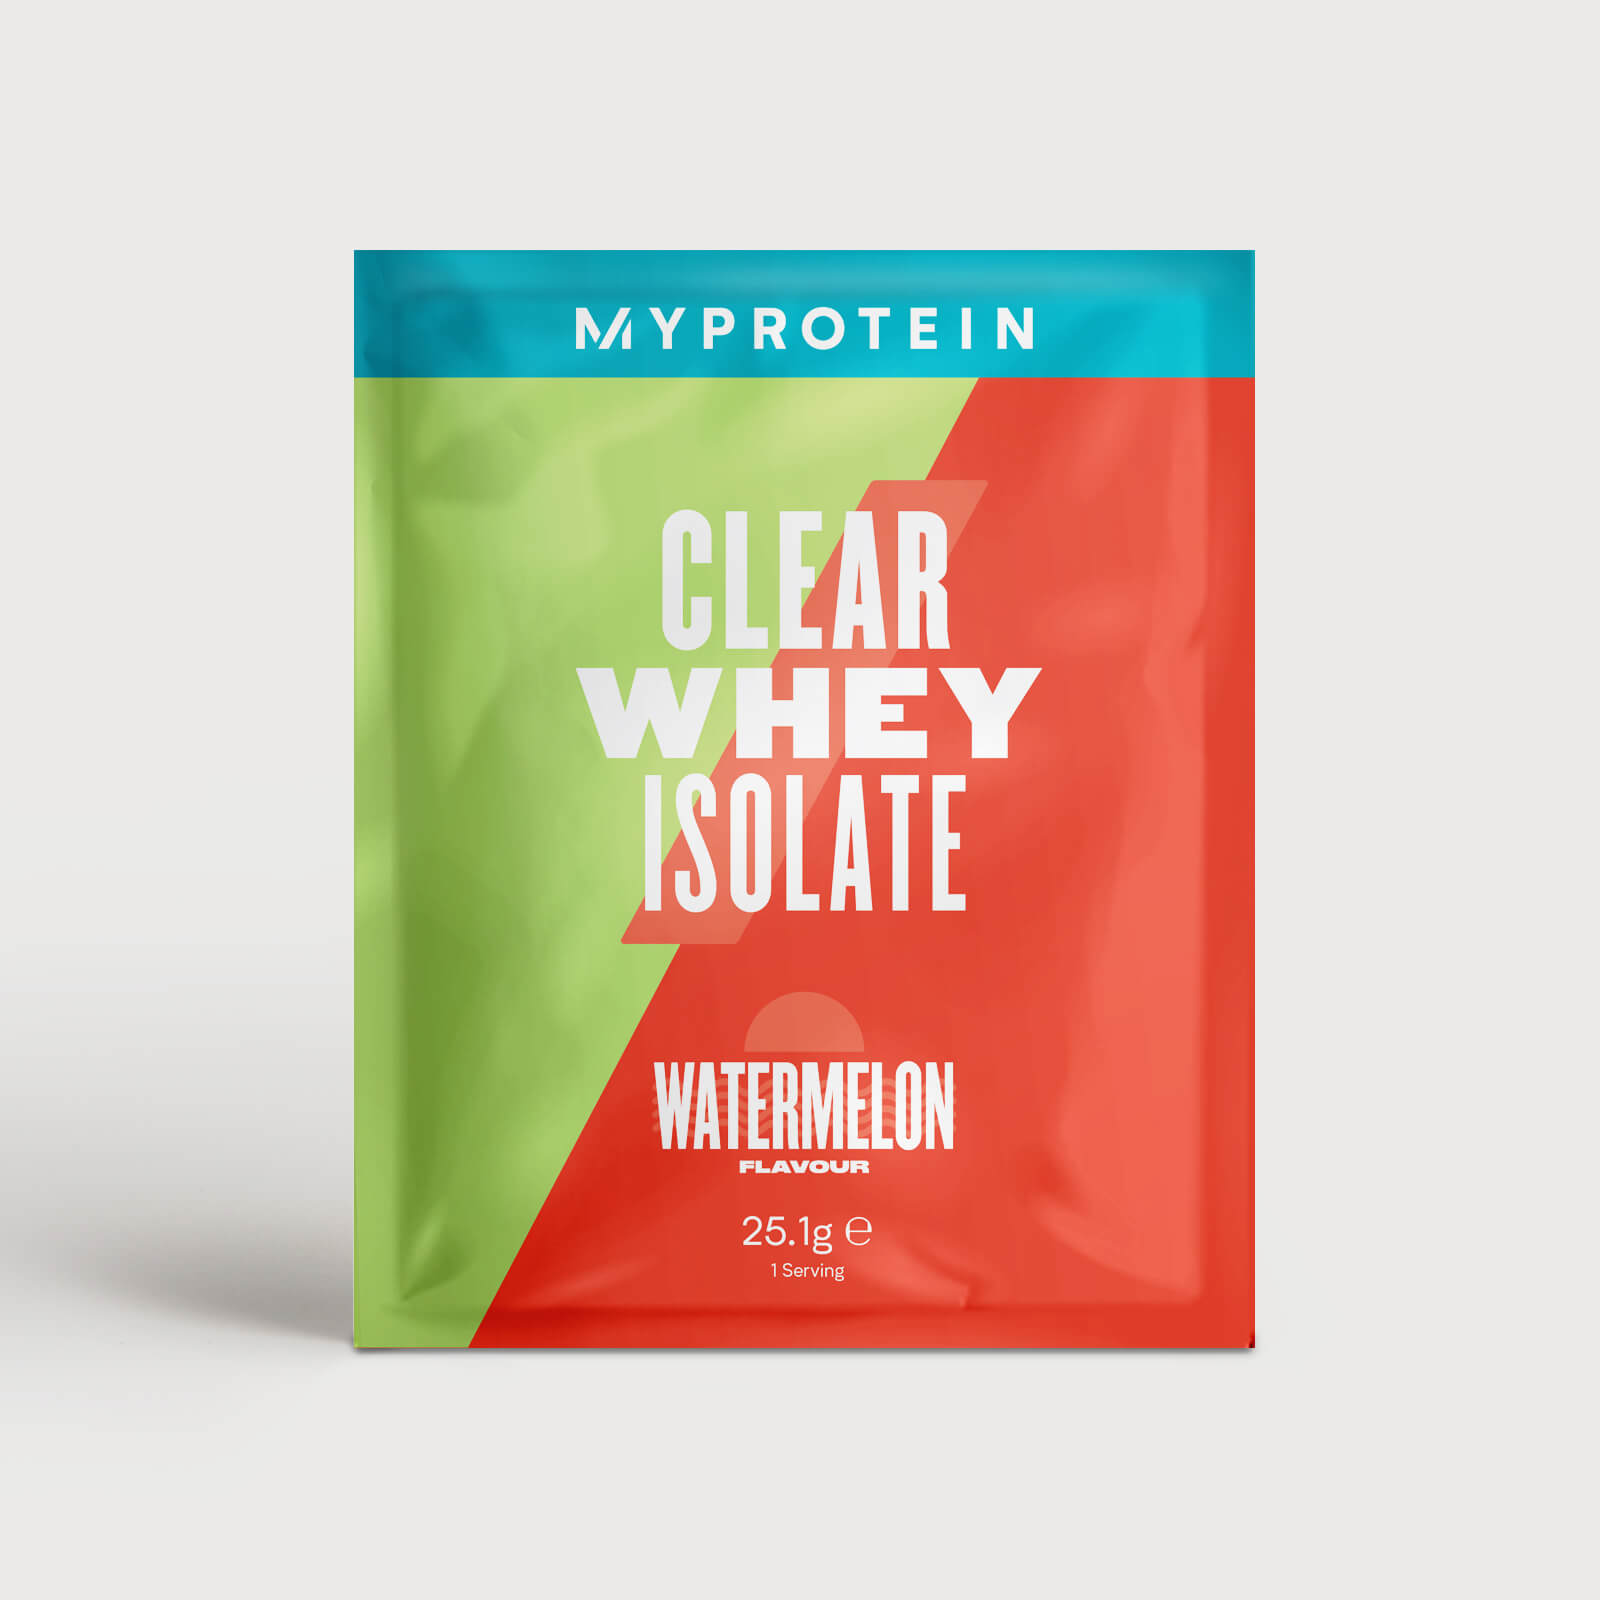 Myprotein Clear Whey Isolate (Sample) - 25.1g - Sandía